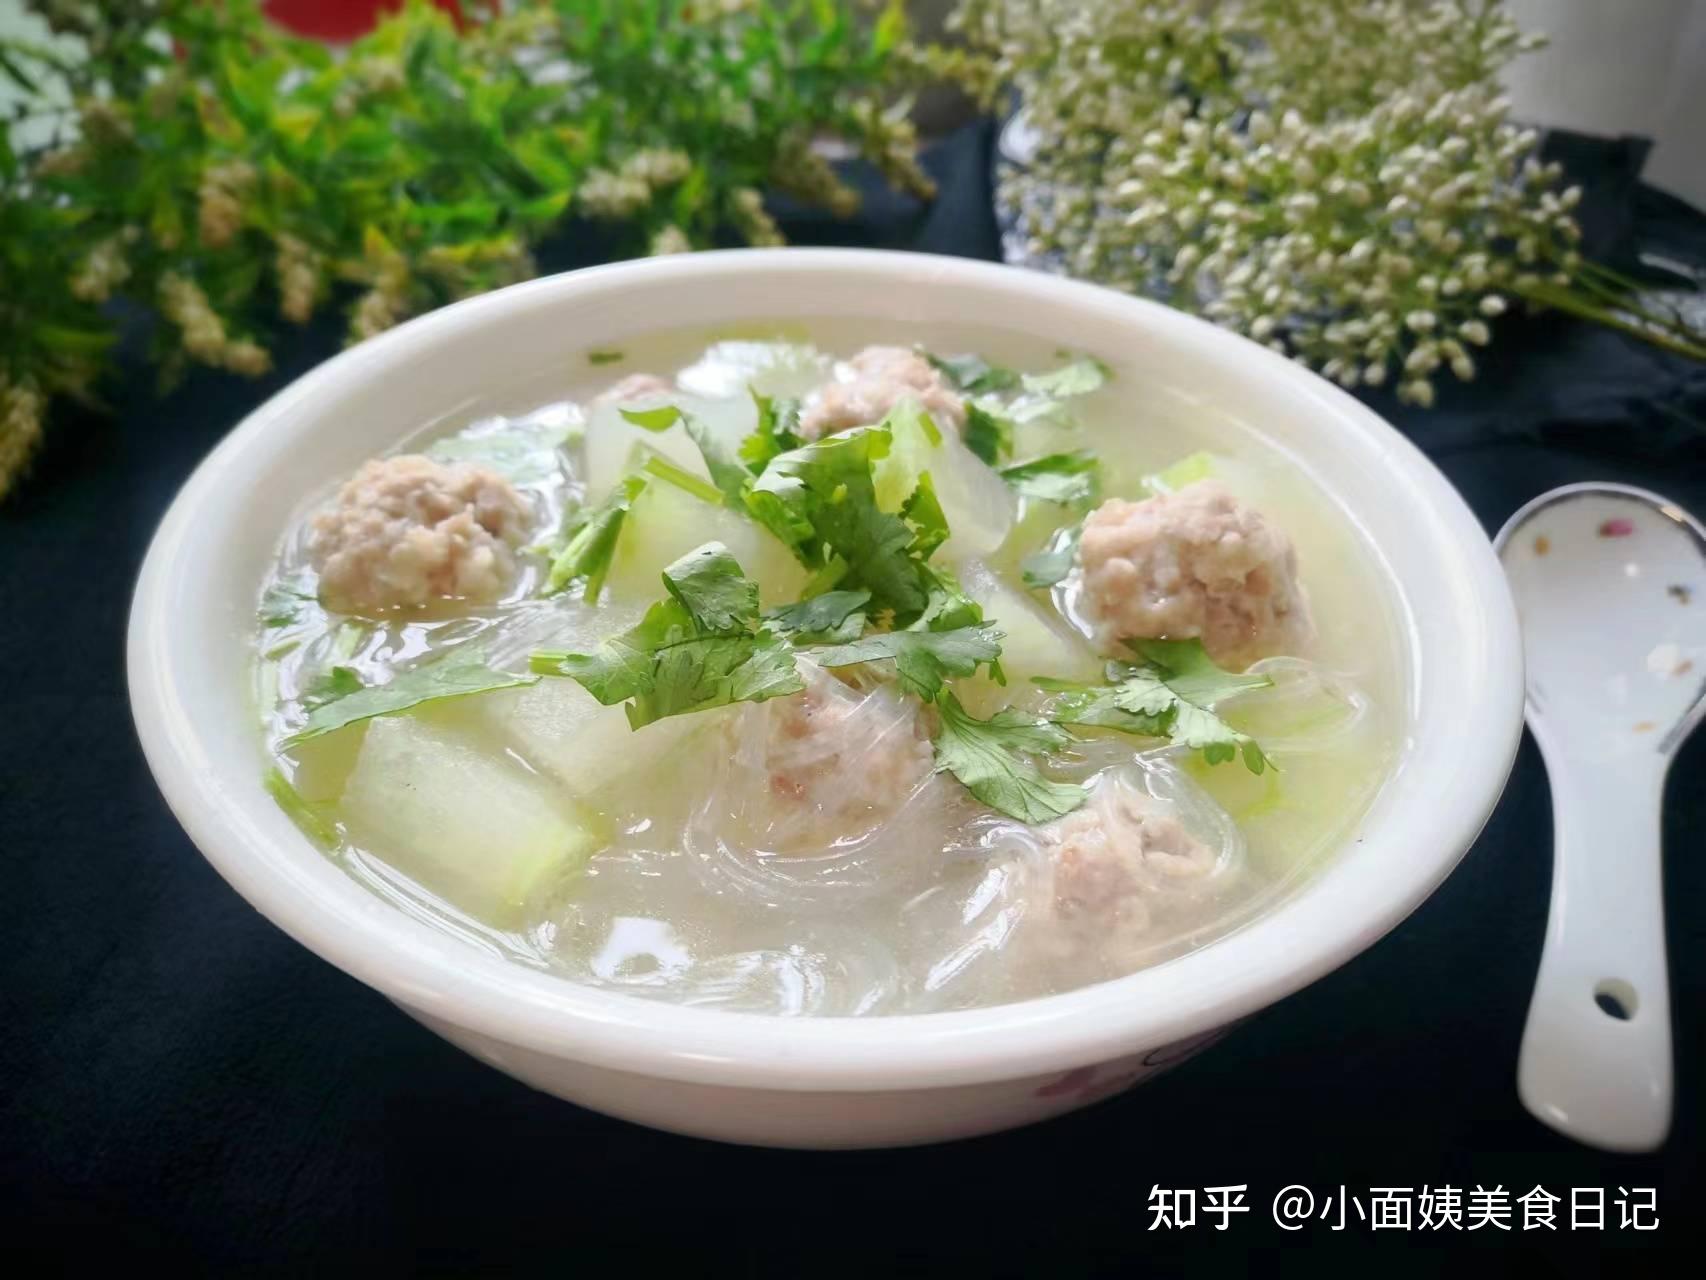 荷叶冬瓜汤，广东人夏天的消暑汤谱，记得多煲给家人喝 - 哔哩哔哩